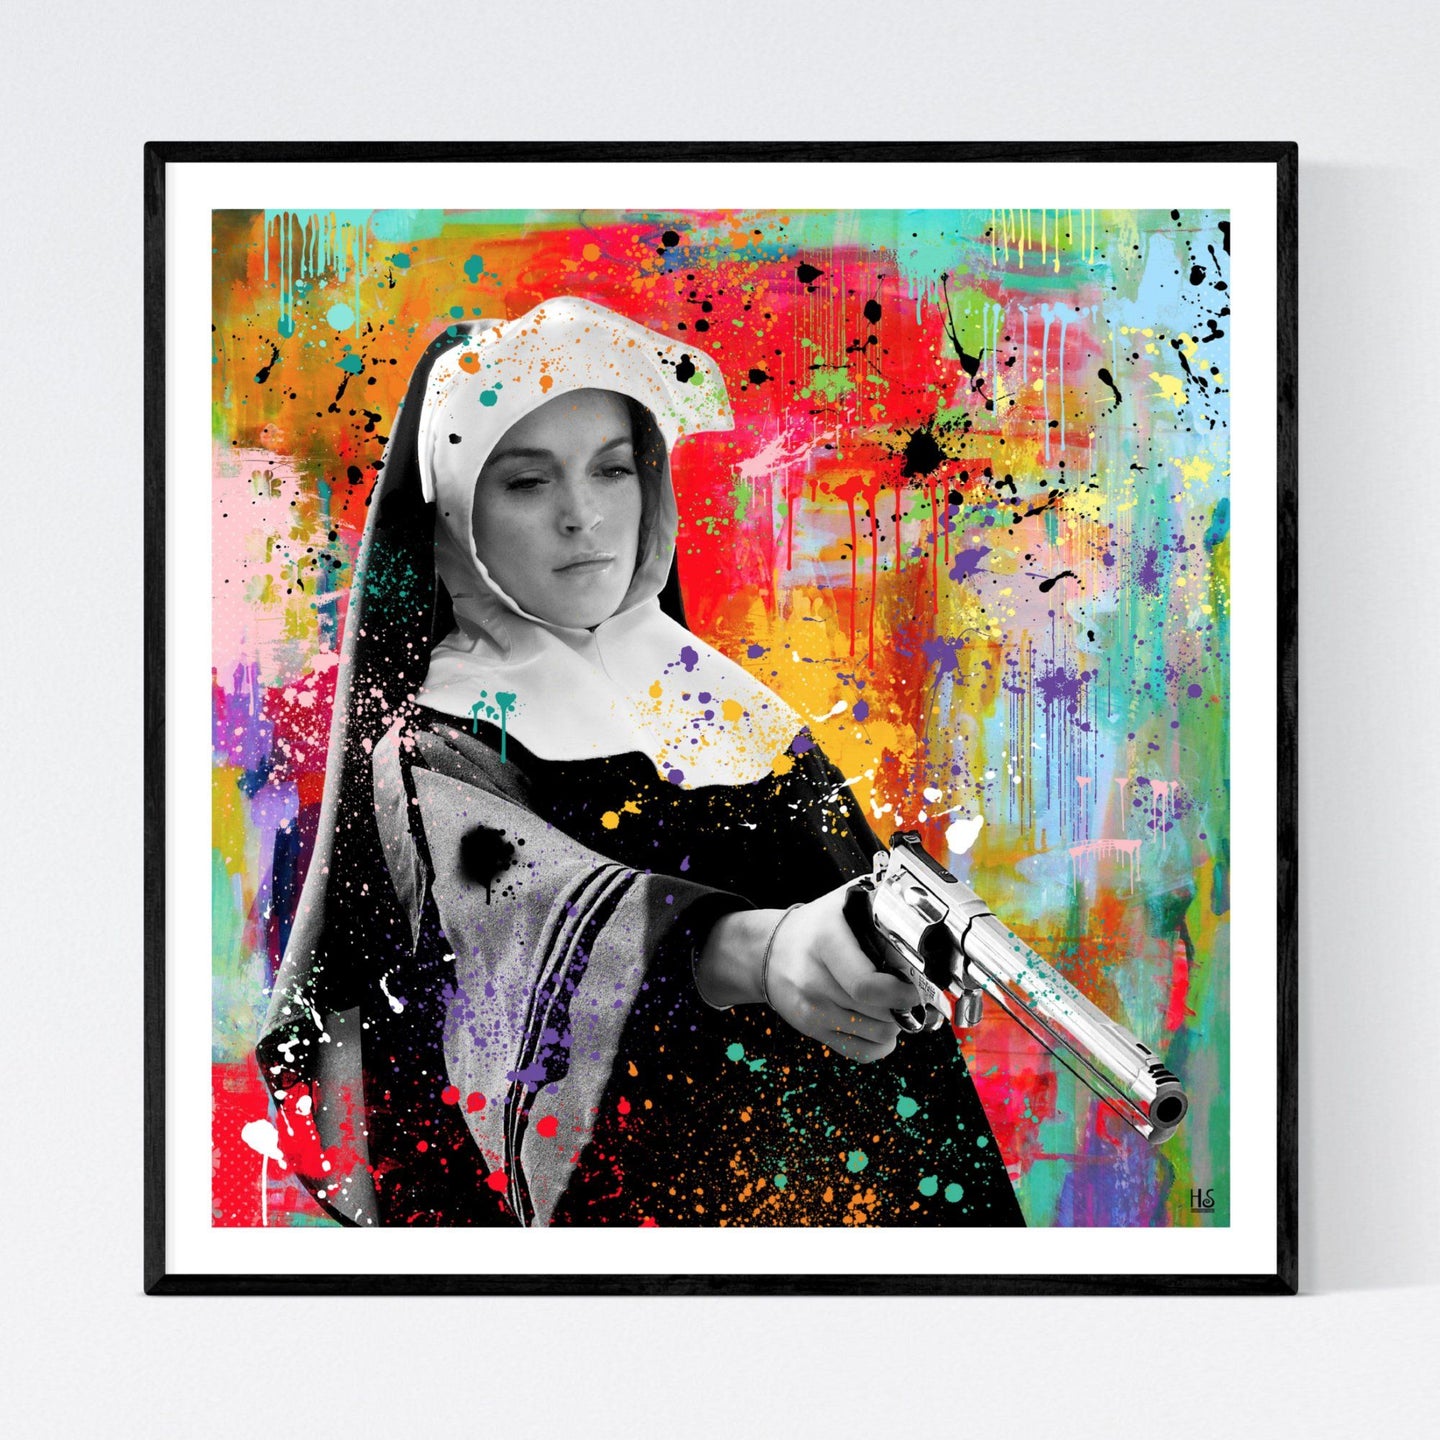 April Booth - original pop art kunst, der viser Lindsay Lohan som nonne i kultfilmen Machete. Hun er i sort)hvid og står med en stor revolver i hånden. Baggrunden er nærmest abstrakt og meget farverig, ligesom der er mange malerstænk og -klatter - af billedkunstner og pop artist Helt Sort